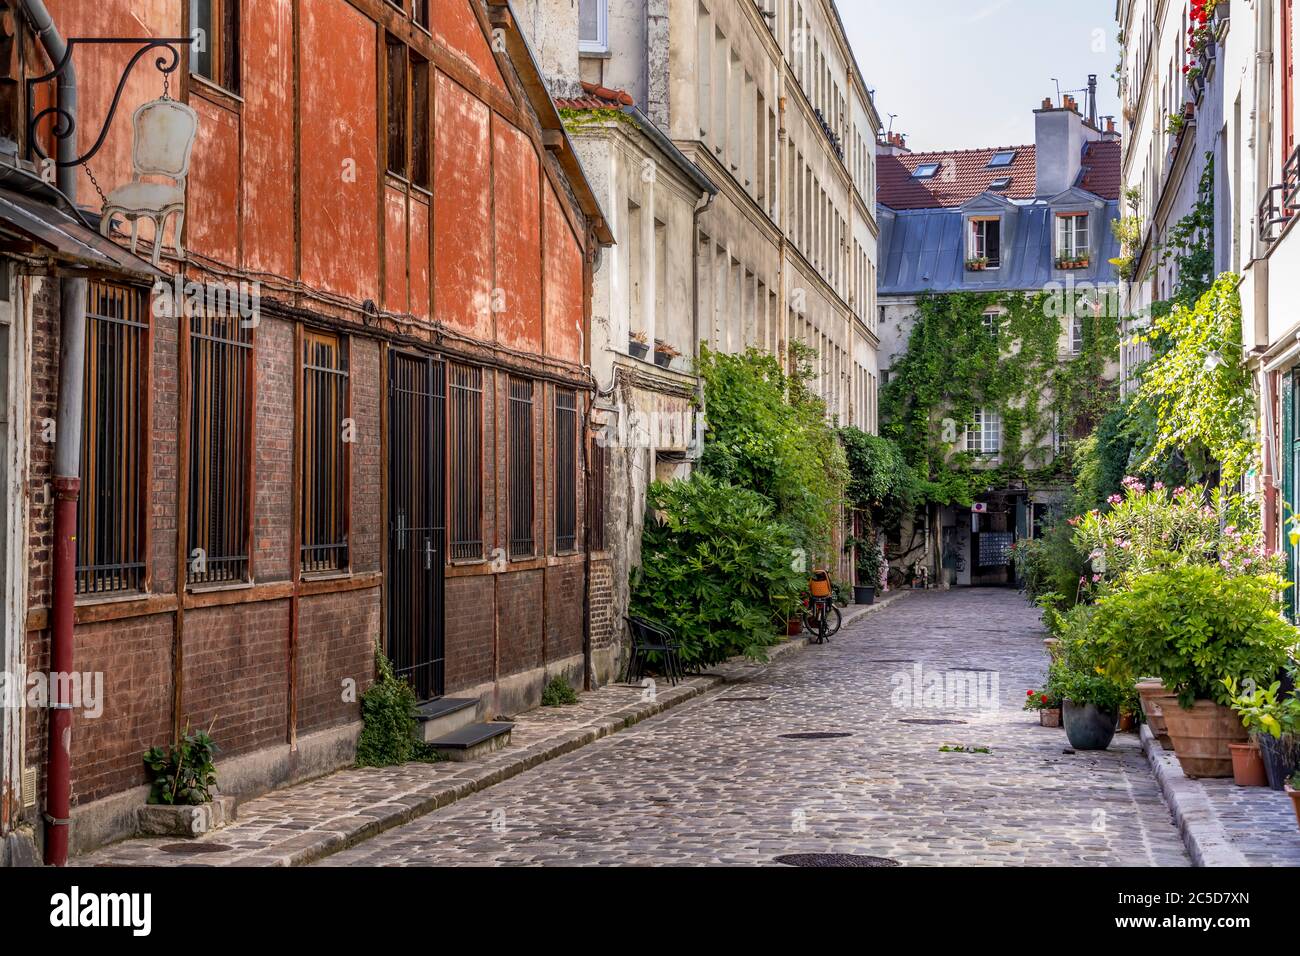 Paris, Francia - 24 de junio de 2020: Paso Lhomme con su vegetación y sus antiguos talleres en el distrito 11 de París Foto de stock